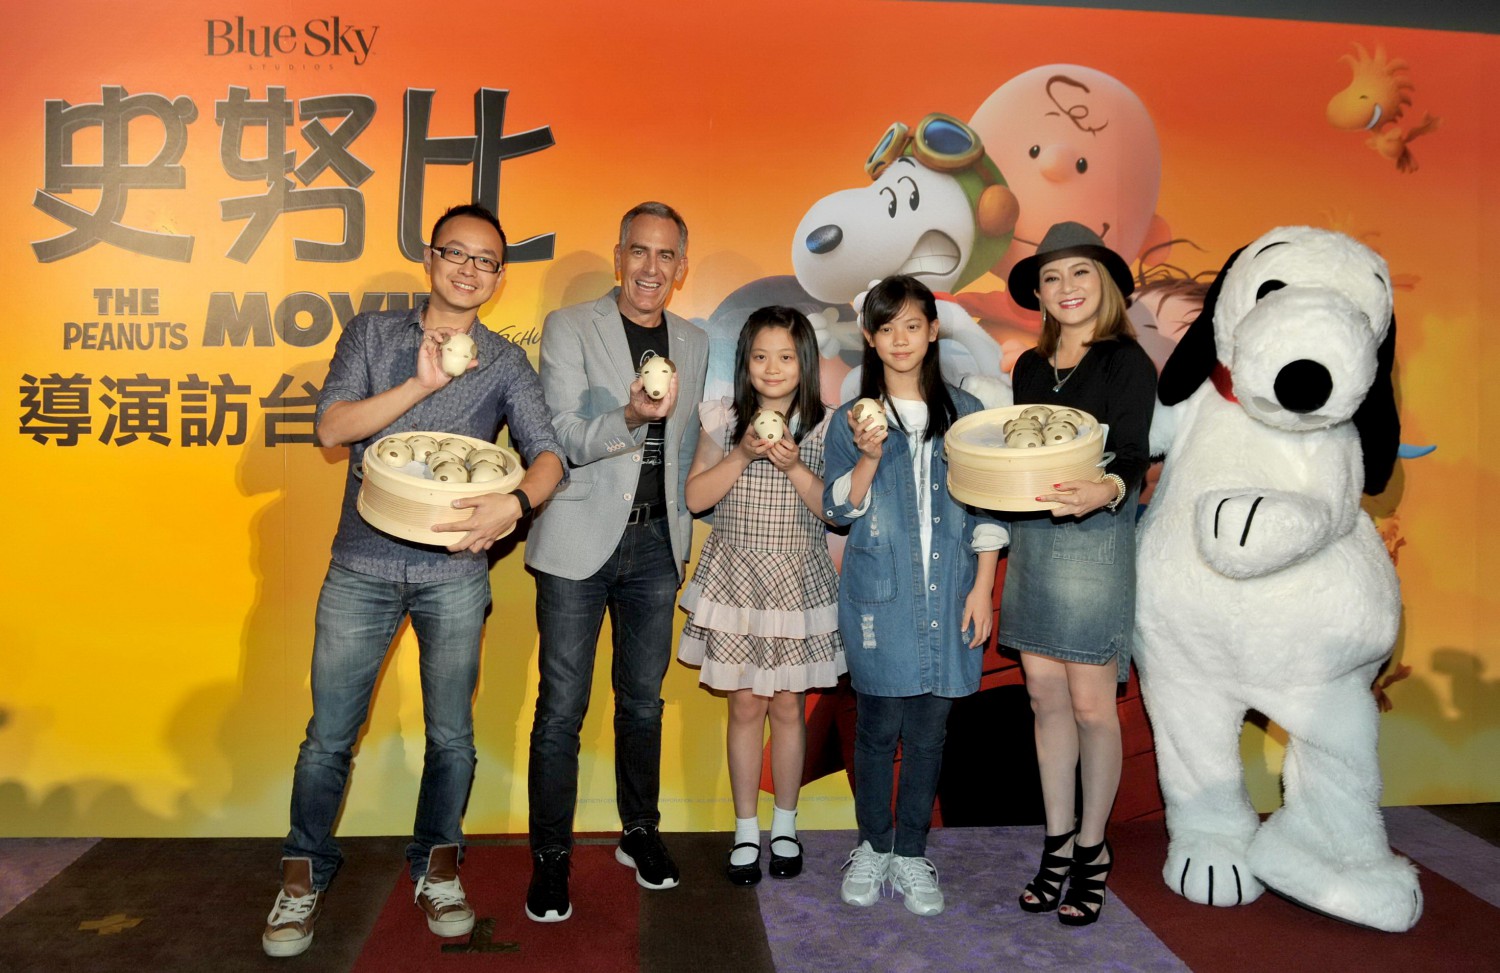 【史努比The_Peanuts_Movie】導演訪台記者會_王彩樺與兩位女兒獻上台灣特製史努比造型饅頭.jpg